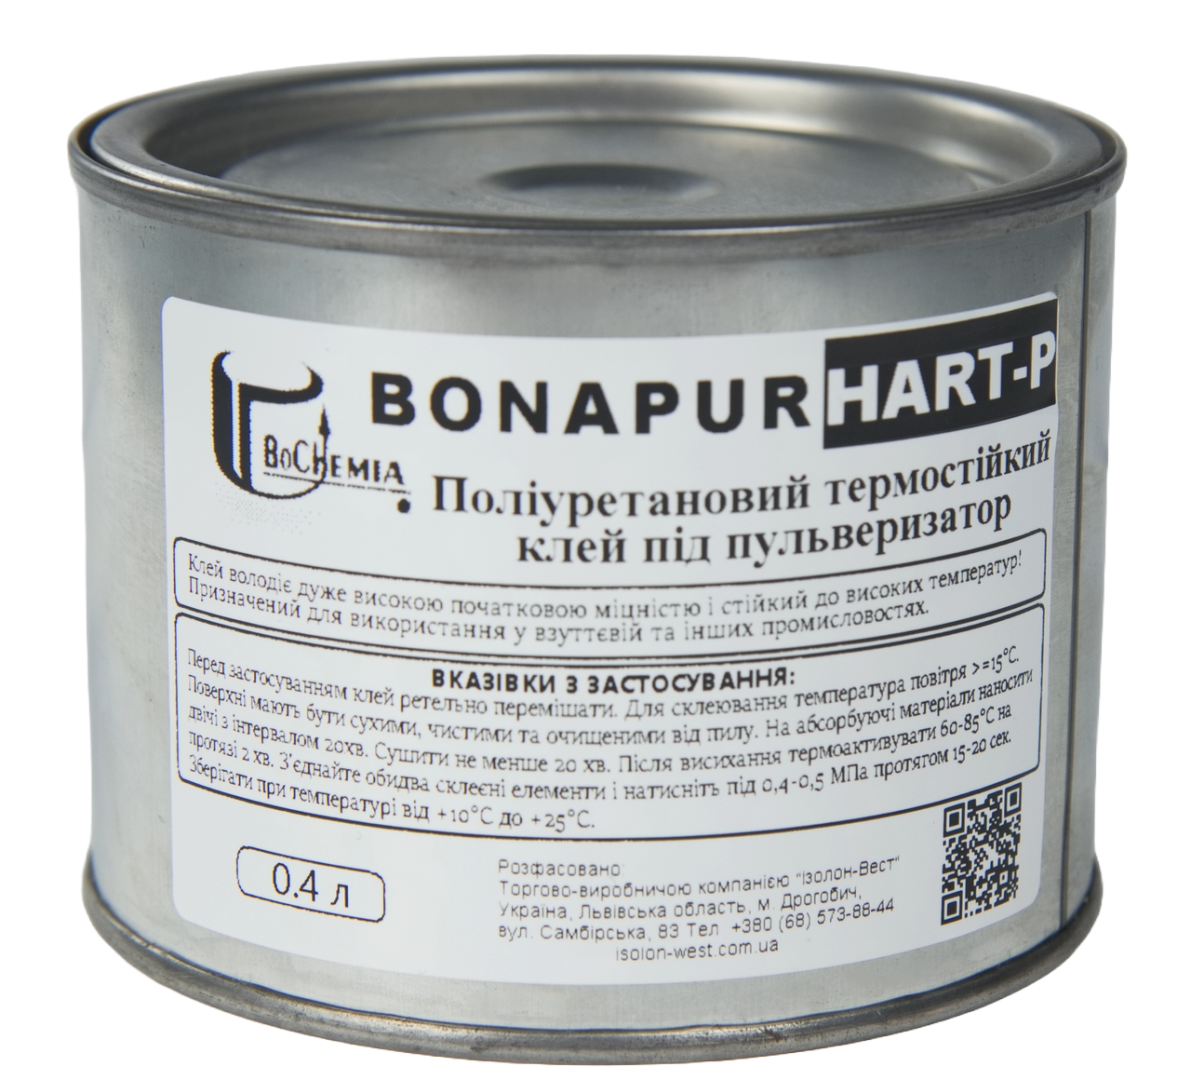 Полиуретановый термостойкий клей BONAPUR HART-P под пульвер, для кожзама, тканей, пвх, синтетической кожи, пвх, Польша детальная фотка